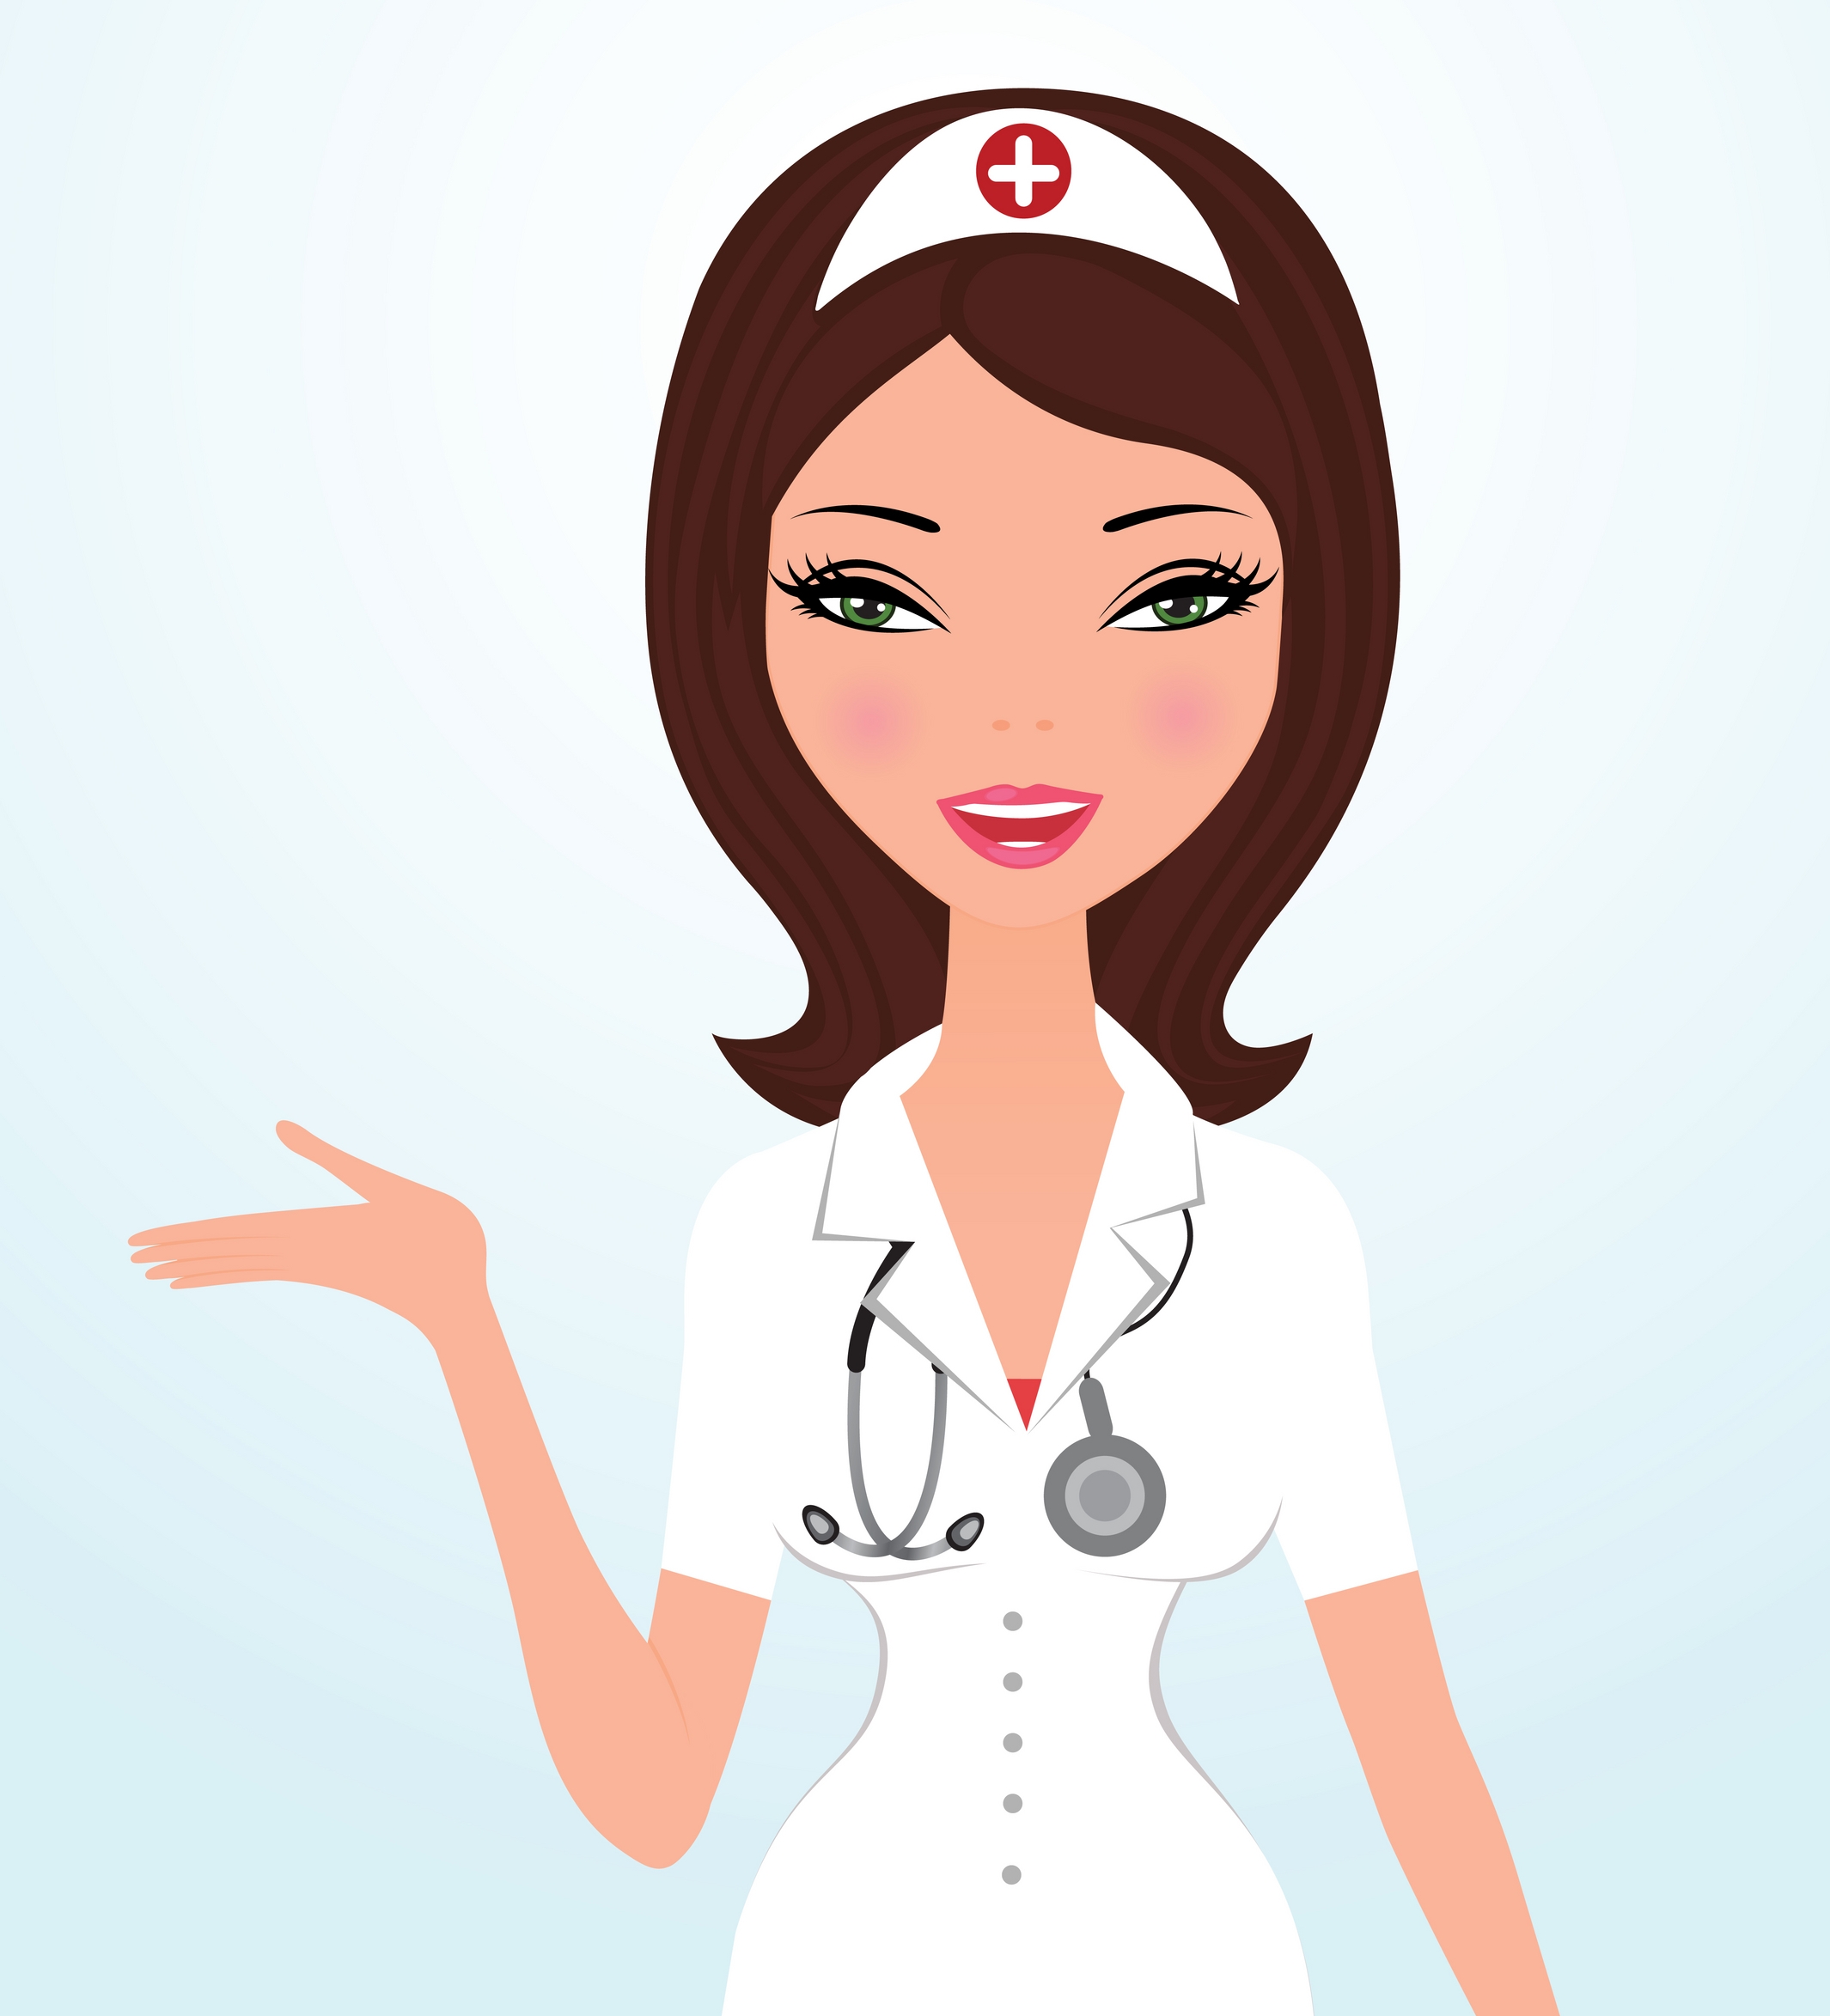 Free Cliparts Nurse Portrait, Download Free Cliparts Nurse Portrait png